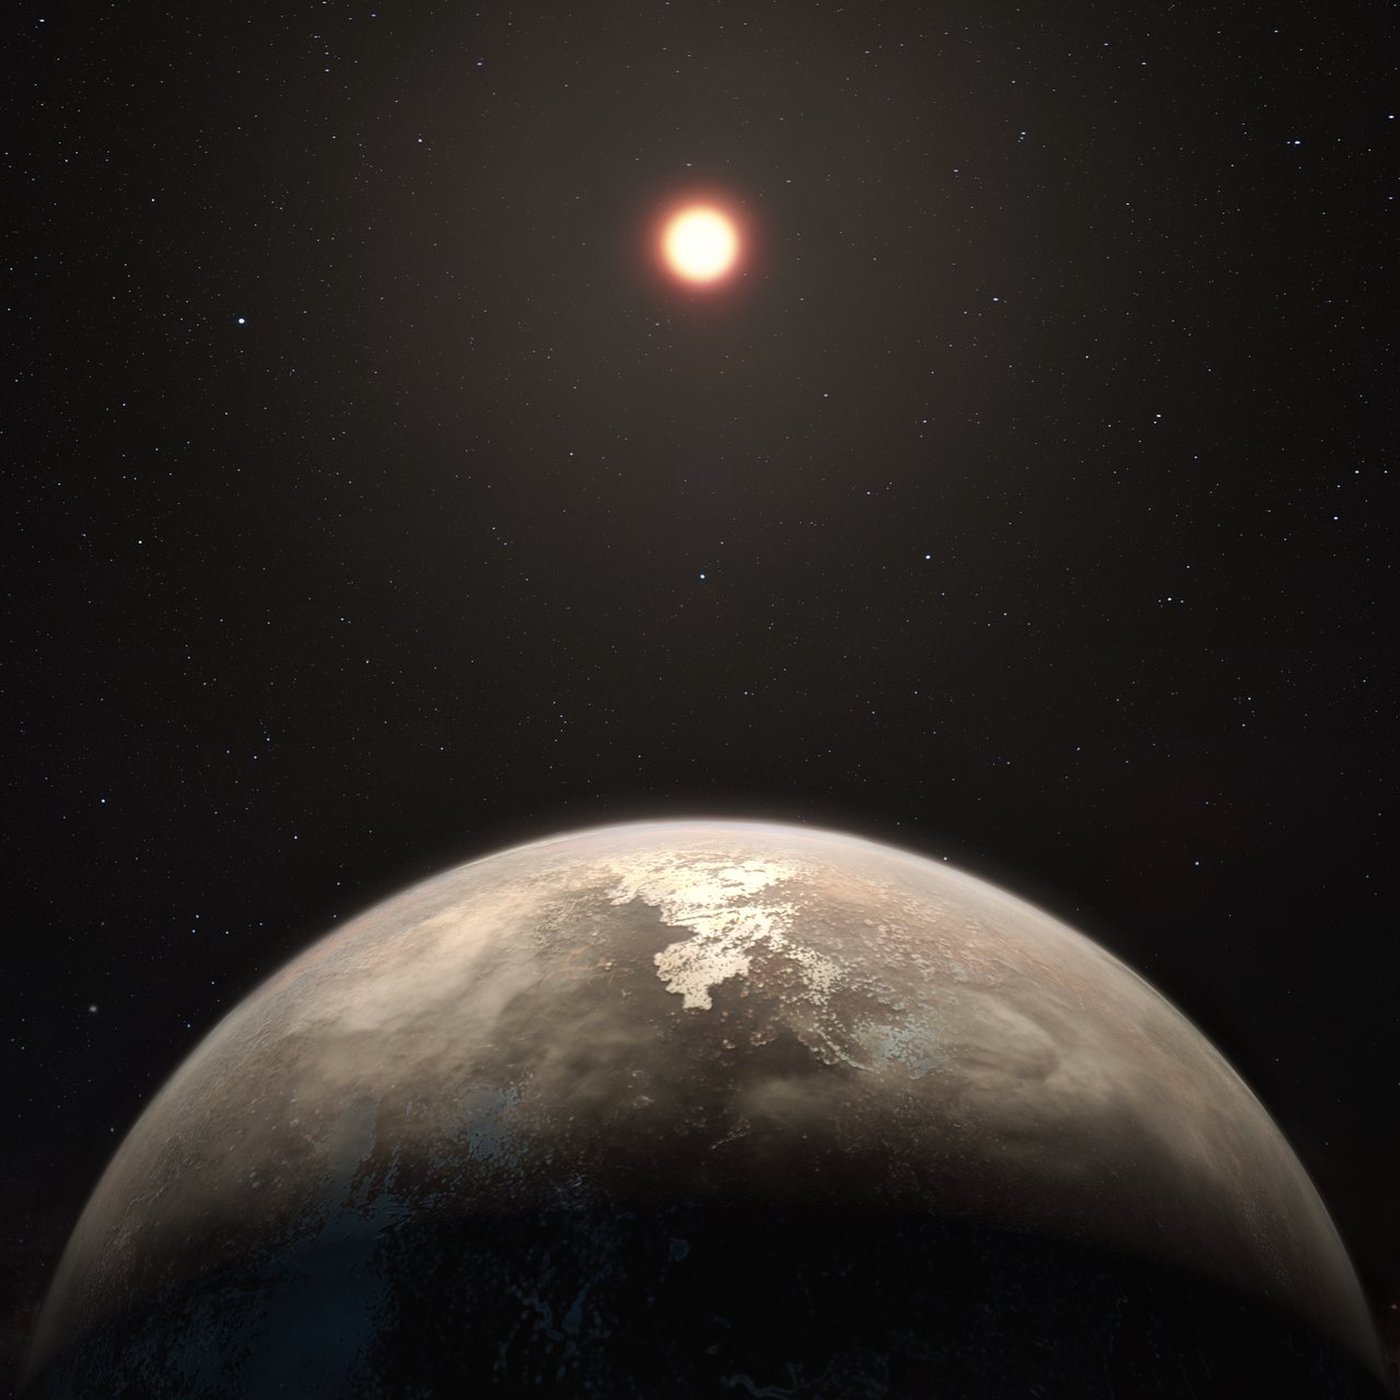 Ross 128b: un exoplaneta a la vuelta de la esquina